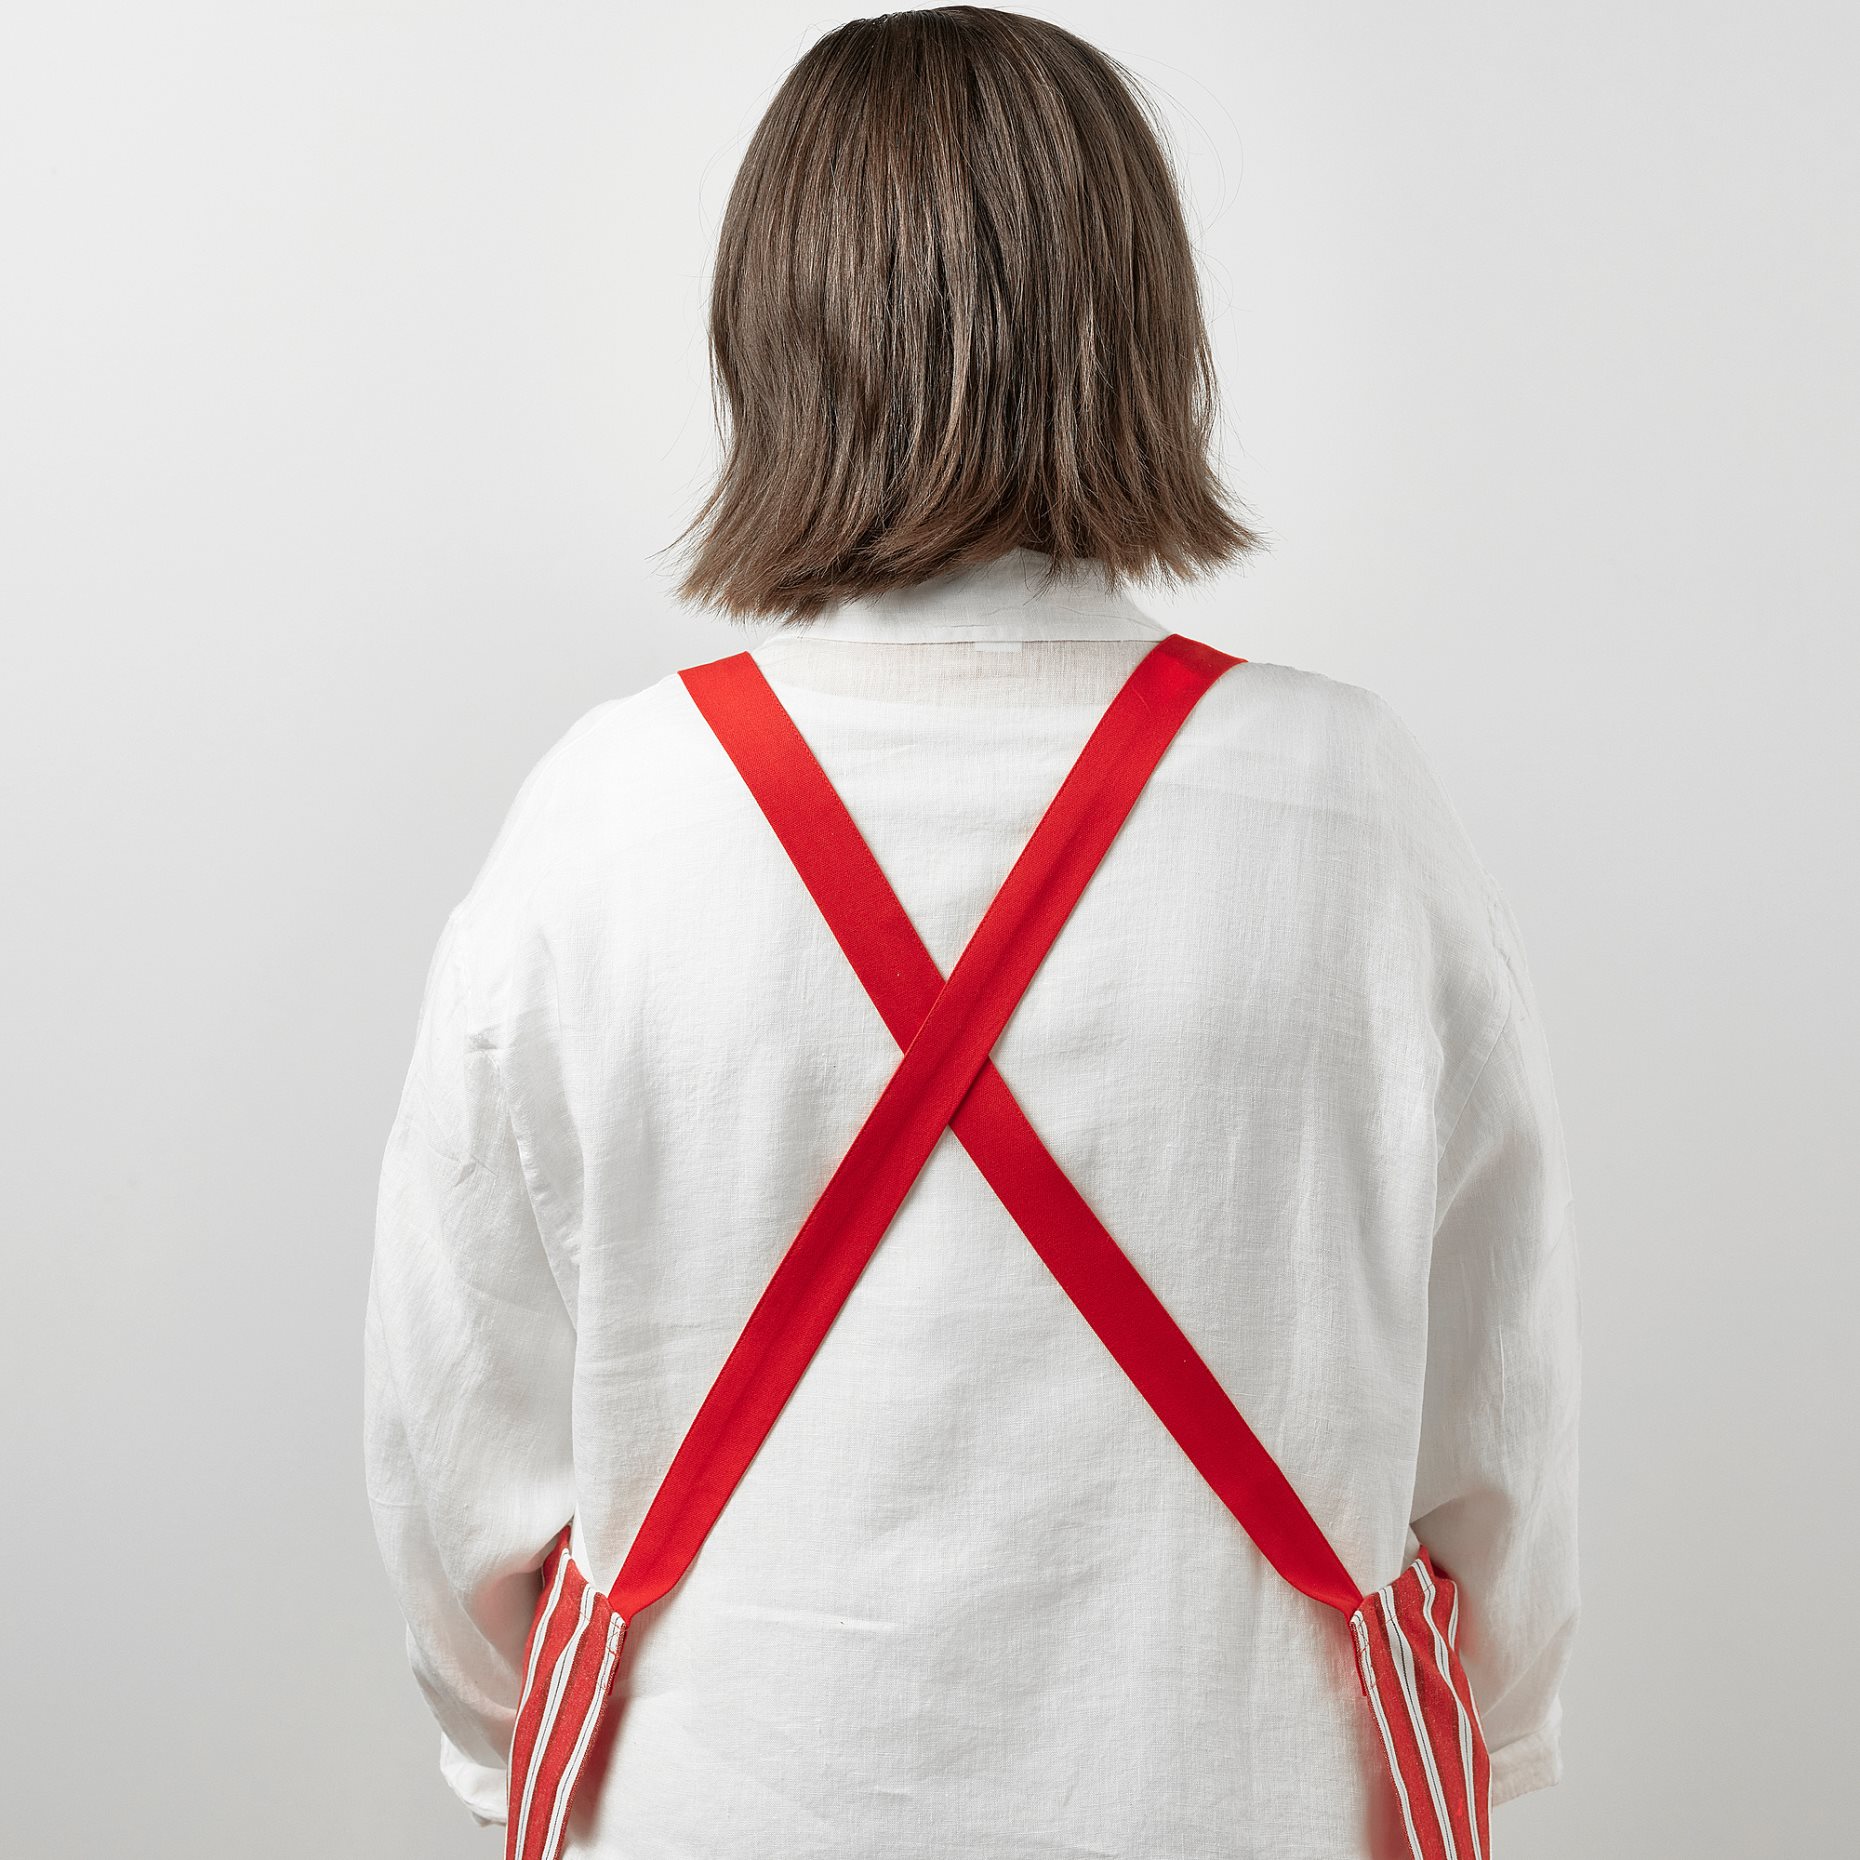 VINTERFINT, apron stripe pattern, 85x89 cm, 405.561.20